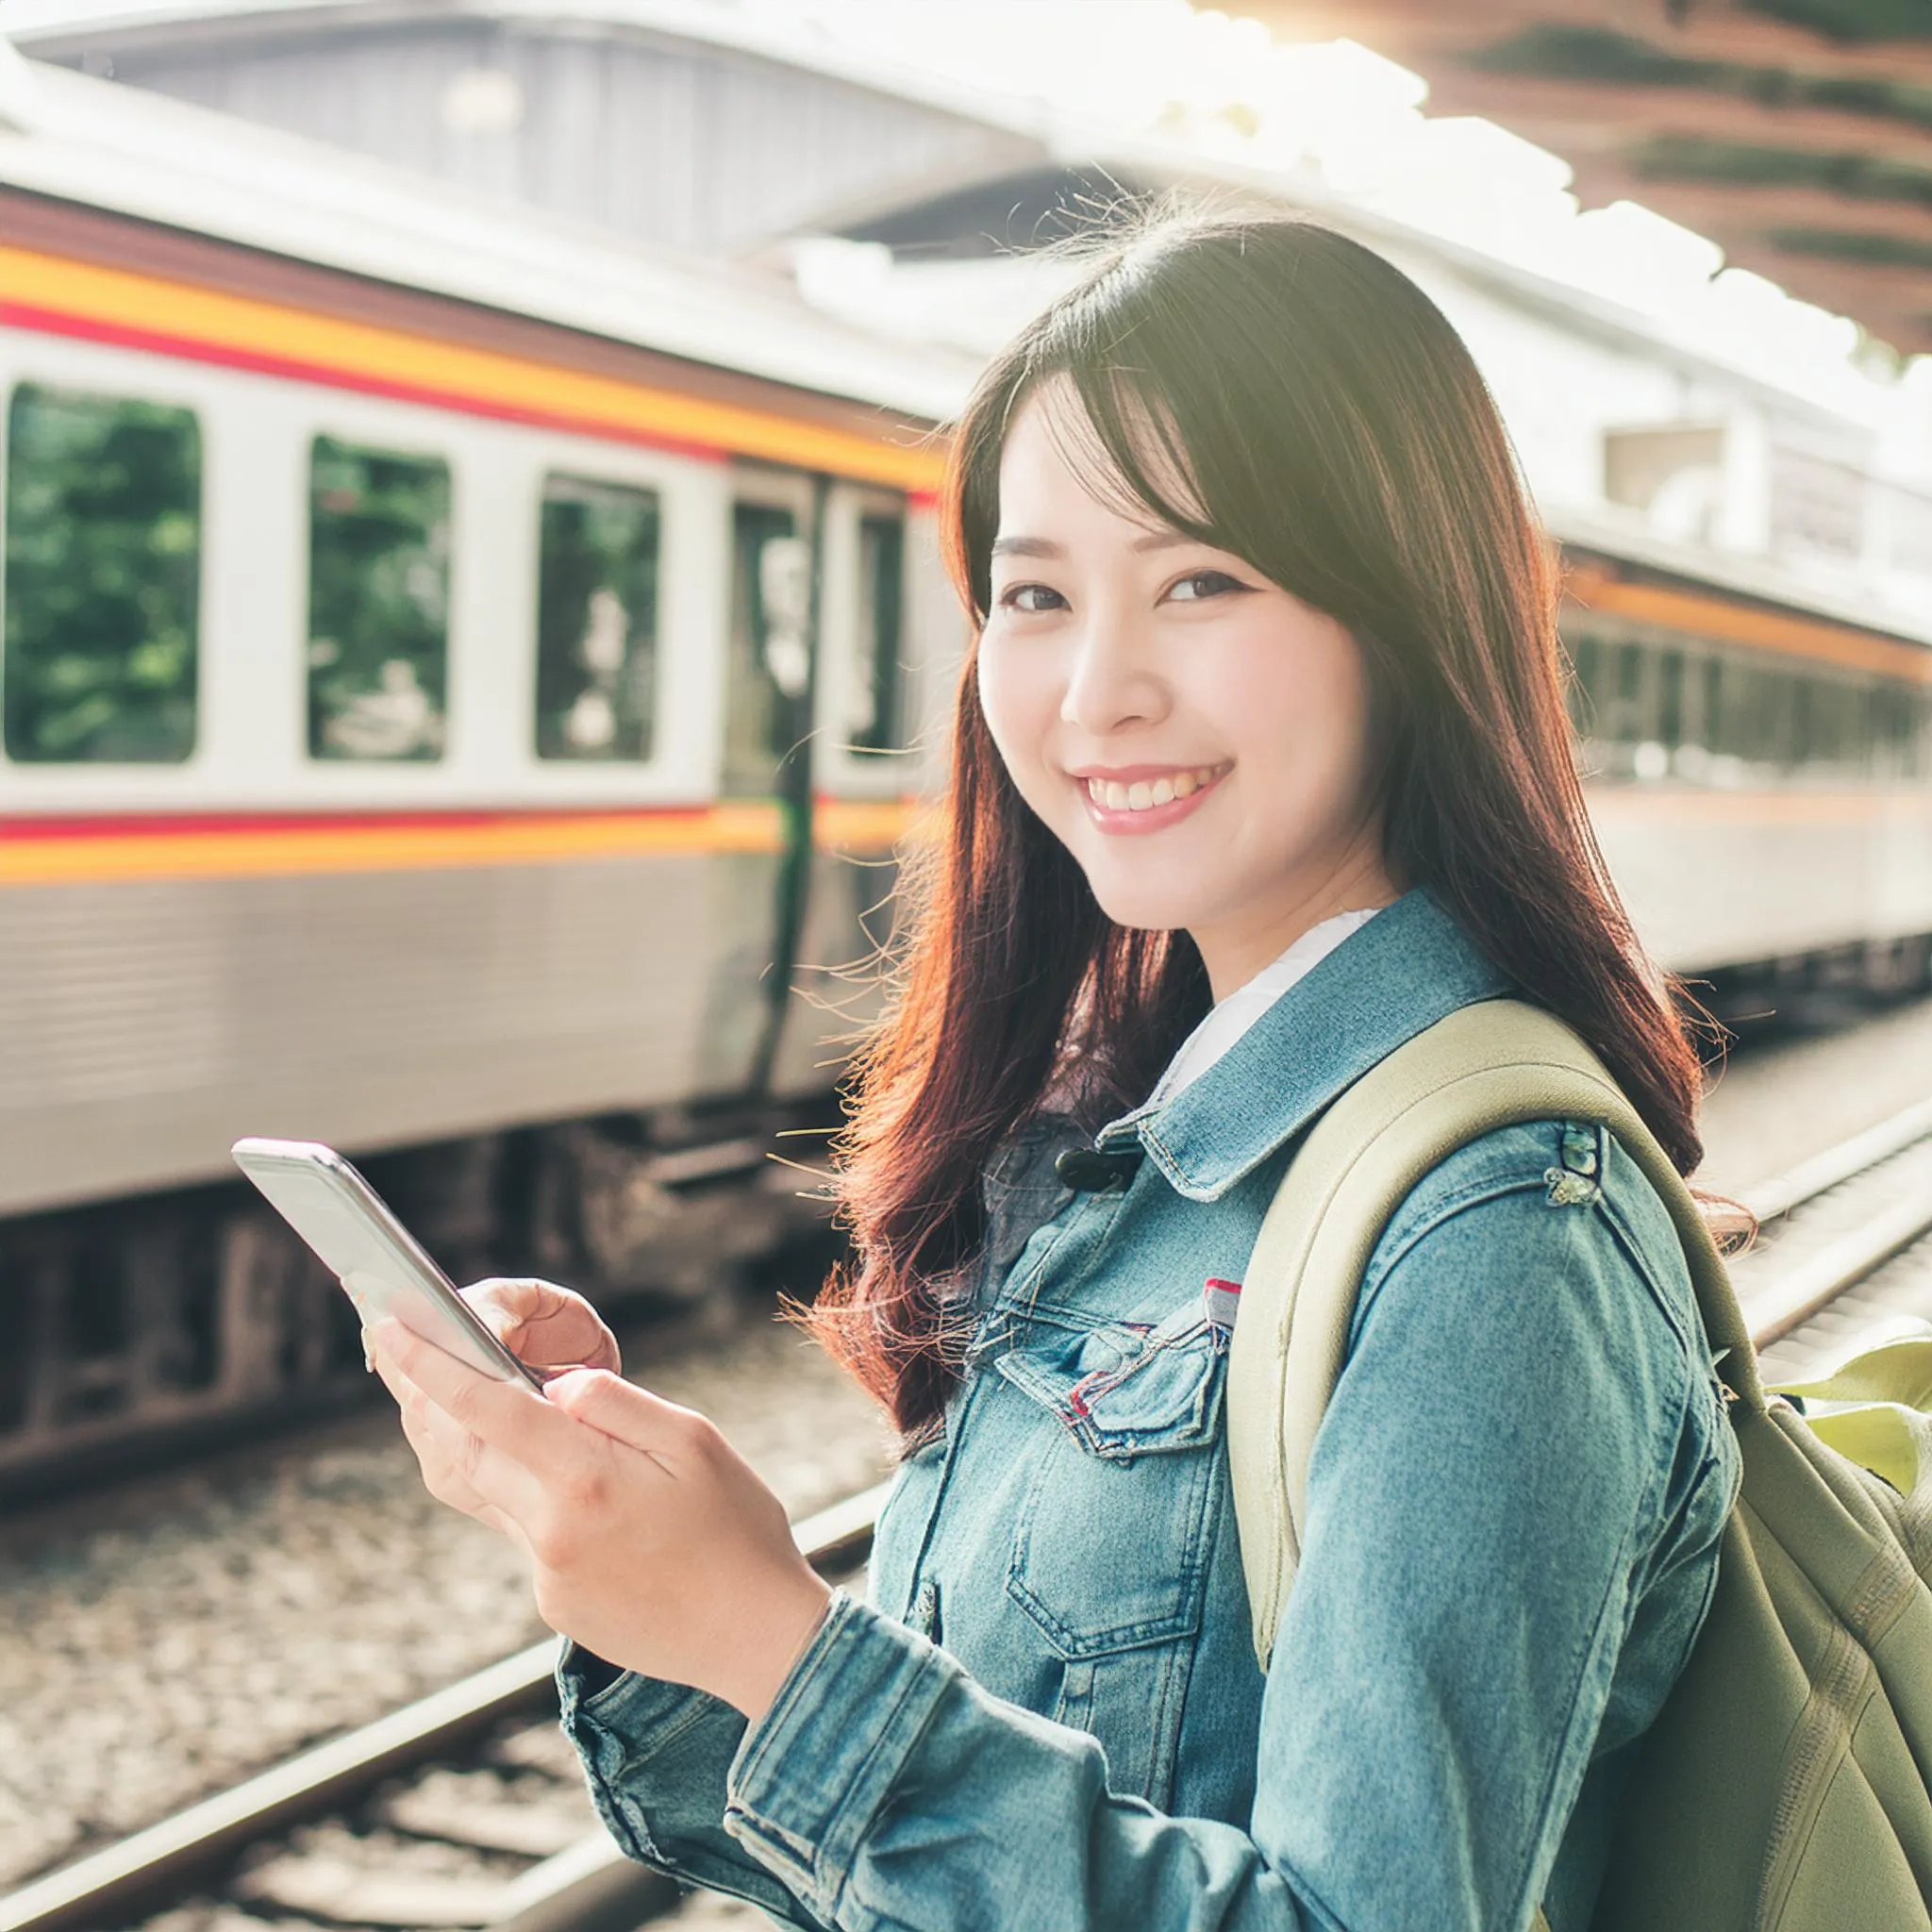 スマートフォンを見て笑顔の学生。女性。電車